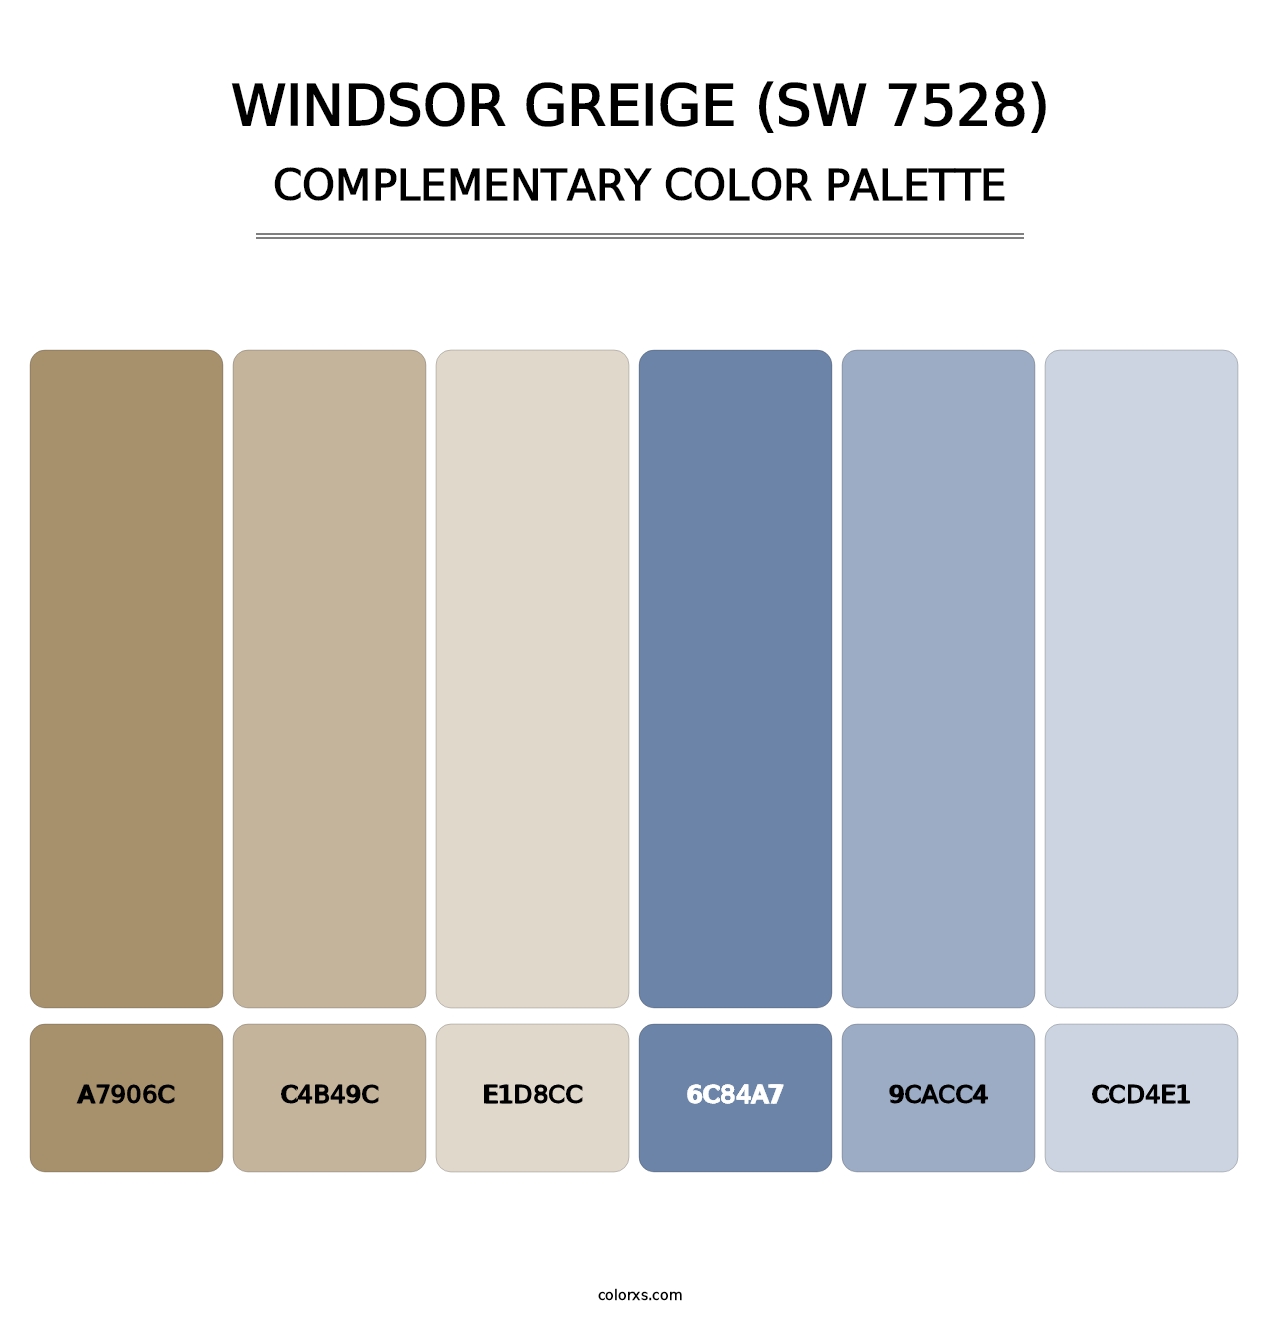 Windsor Greige (SW 7528) - Complementary Color Palette